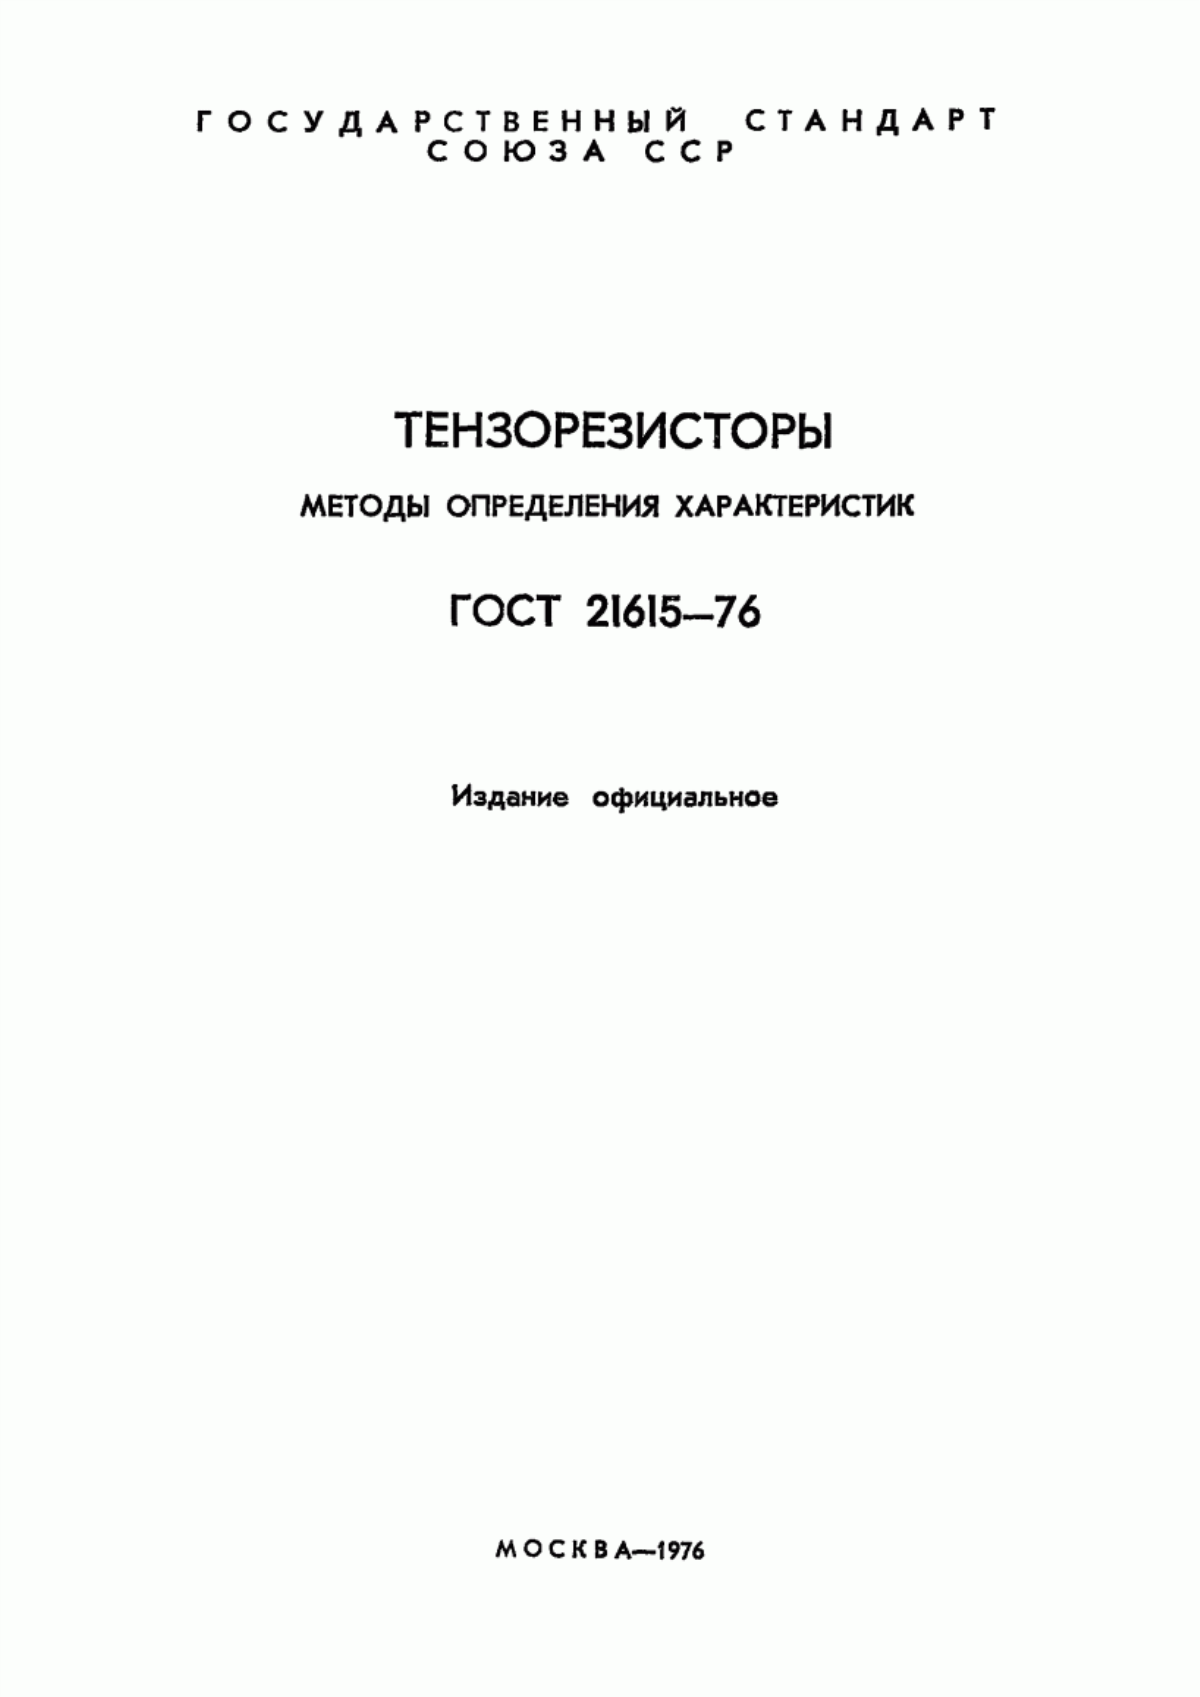 ГОСТ 21615-76 Тензорезисторы. Методы определения характеристик